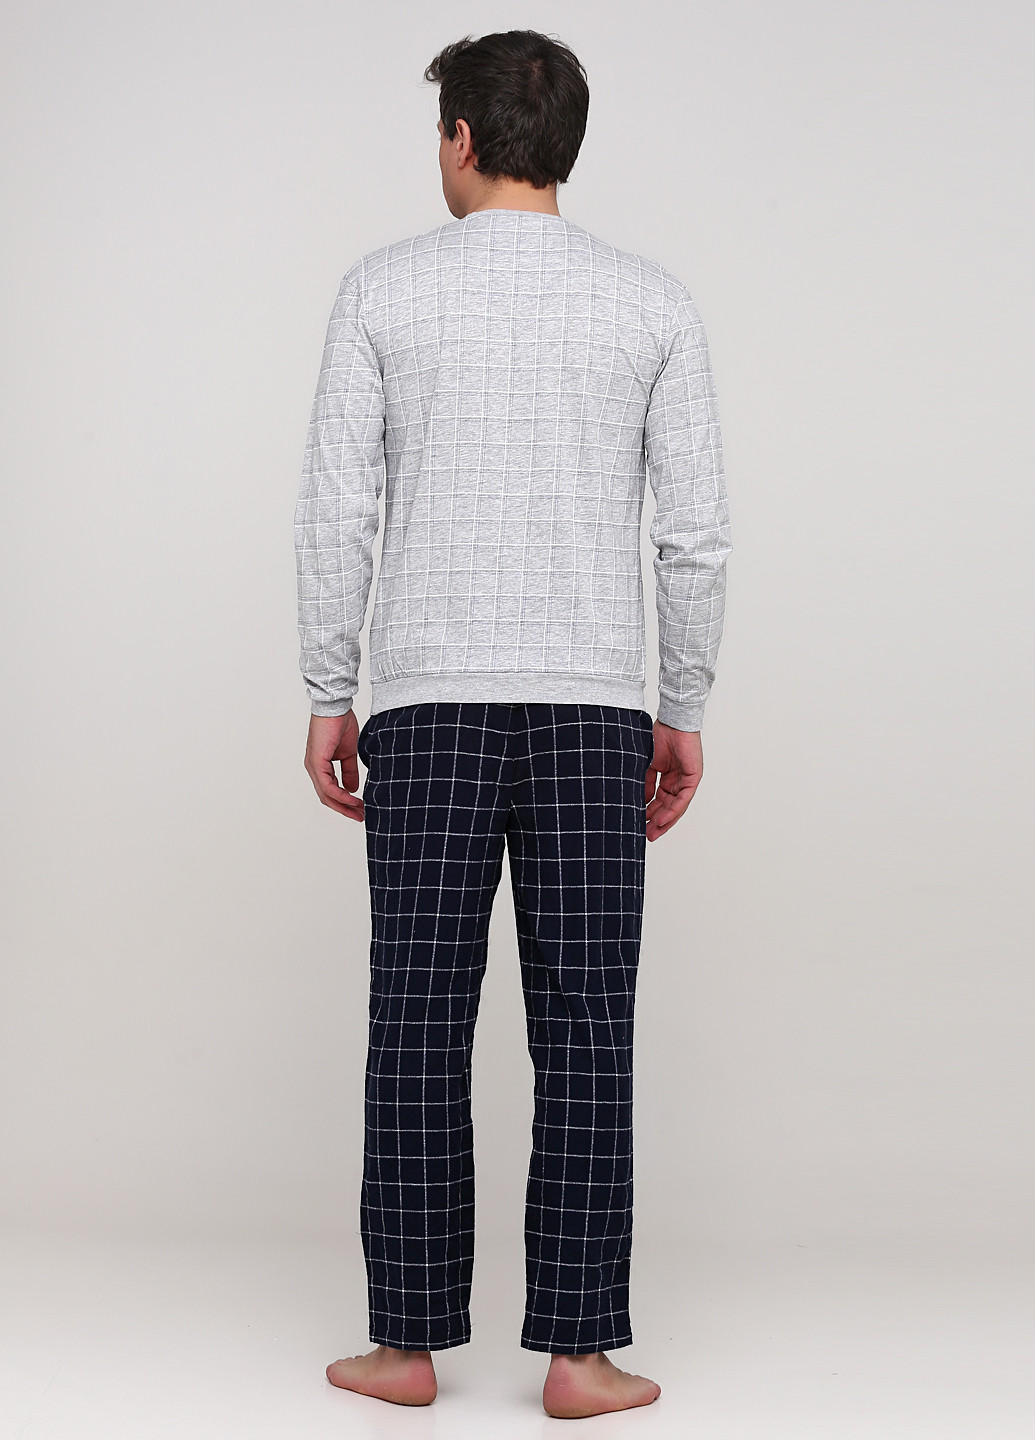 Пижама (свитшот, брюки) C&A свитшот + брюки клетка комбинированная домашняя трикотаж, хлопок